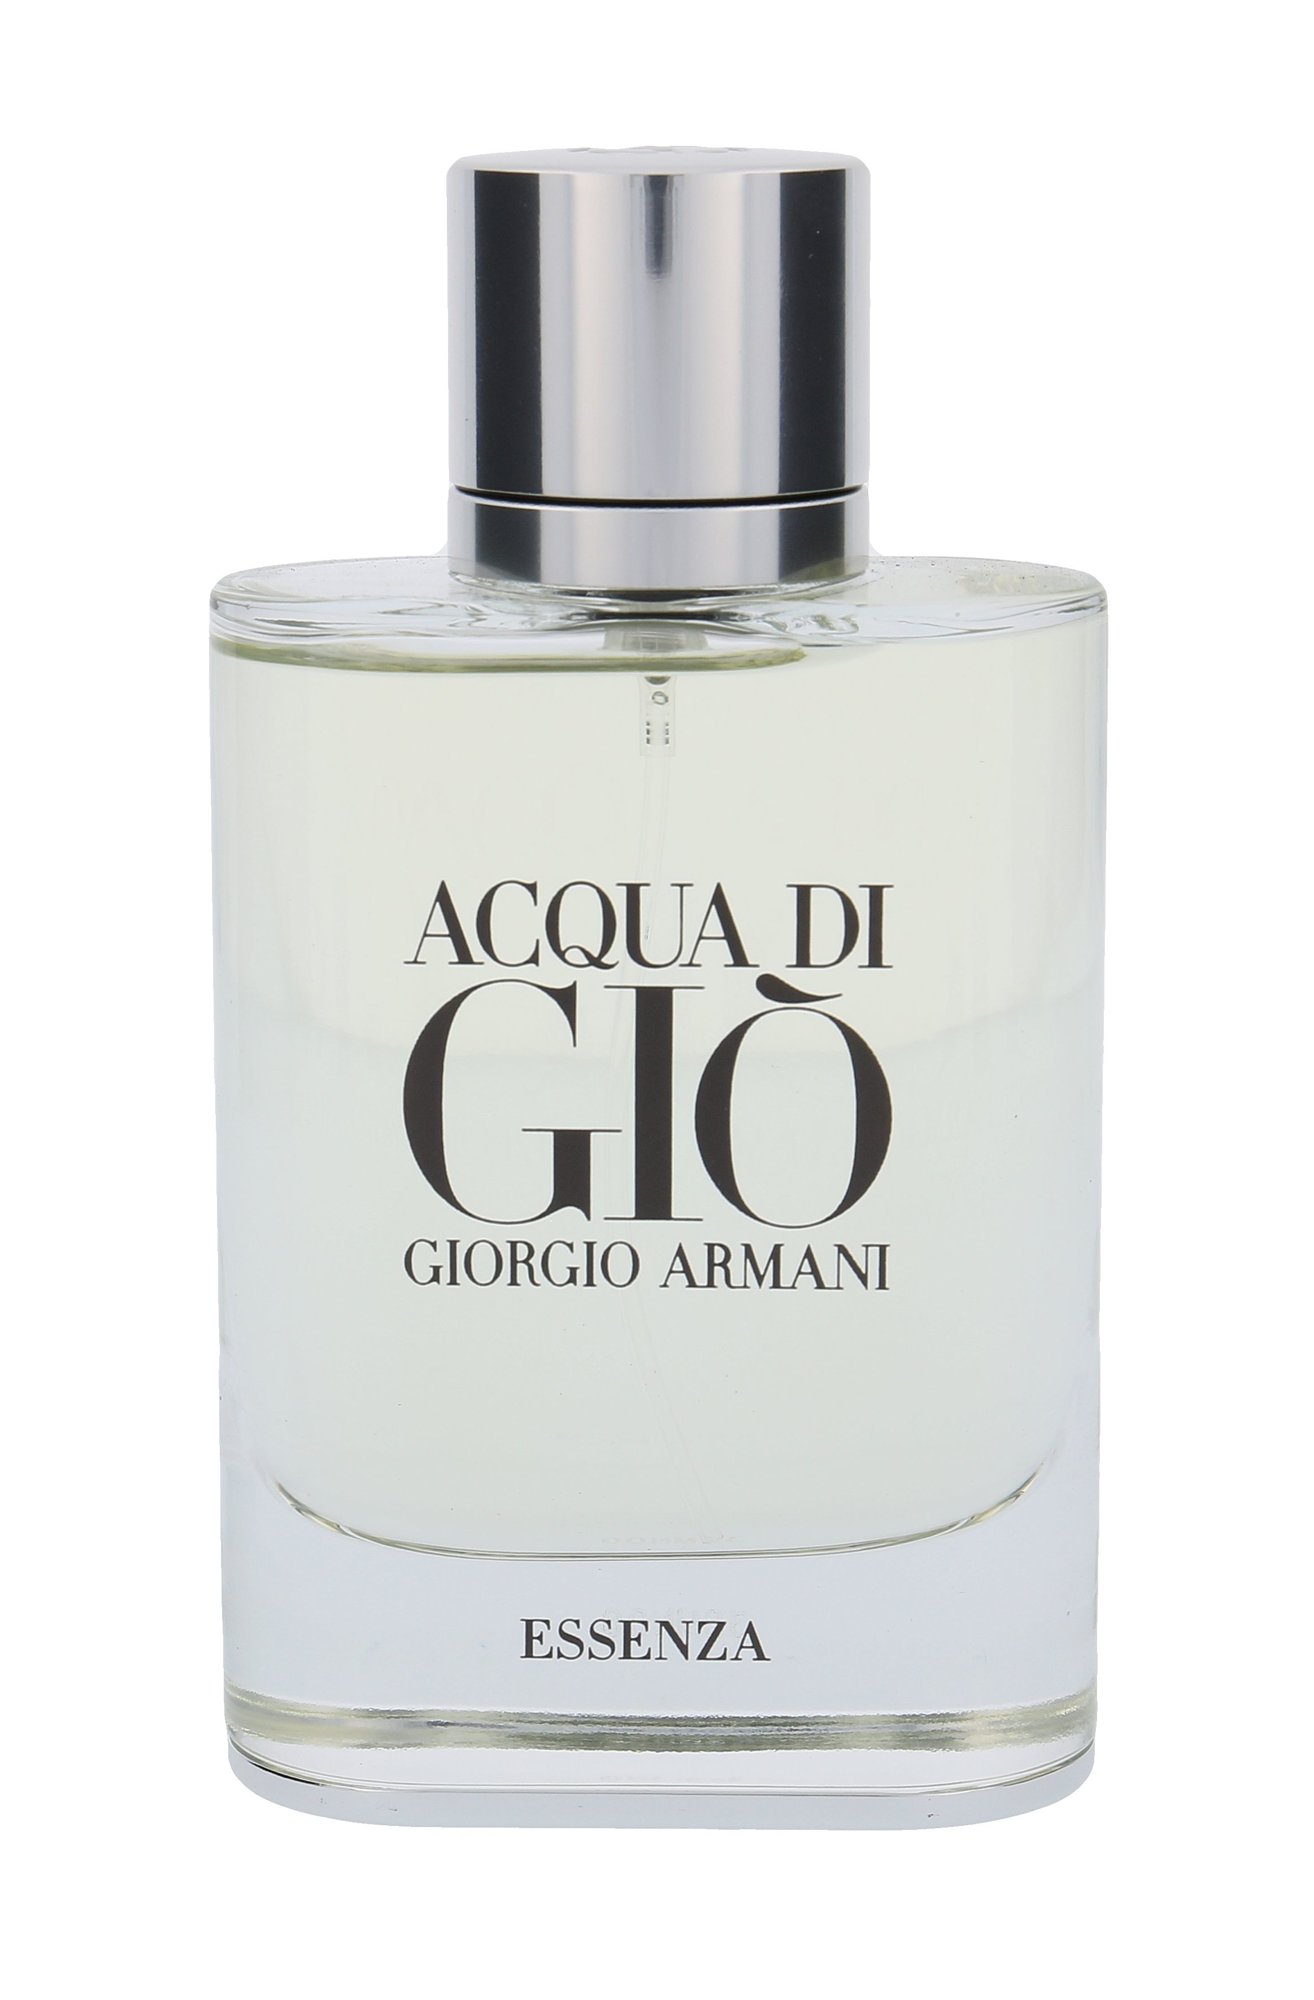 Giorgio Armani Acqua di Gio Essenza, Parfumovaná voda 75ml